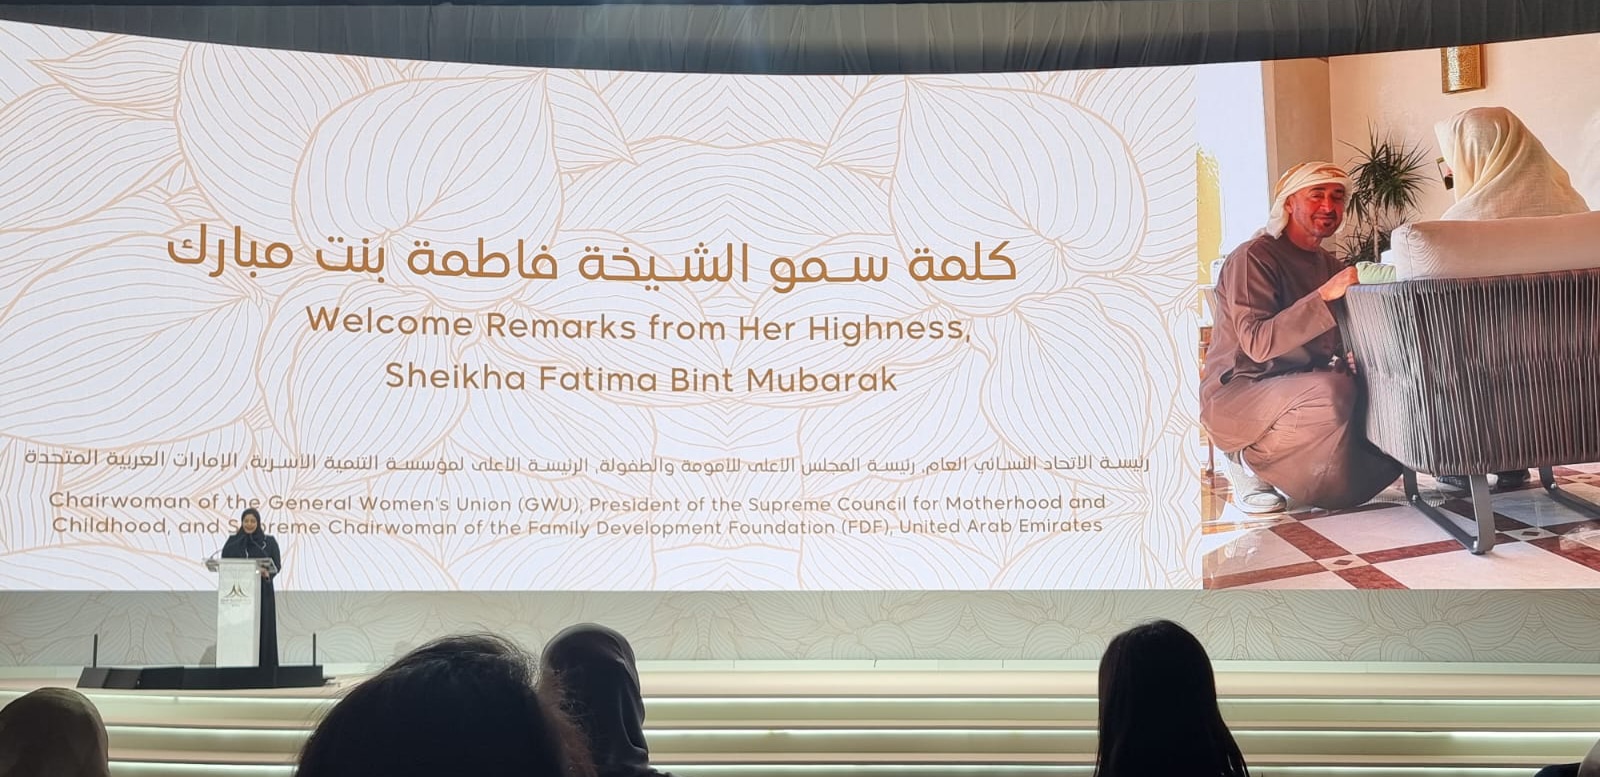 Sheikha Fatima Bint Mubarak speaks during the summit.